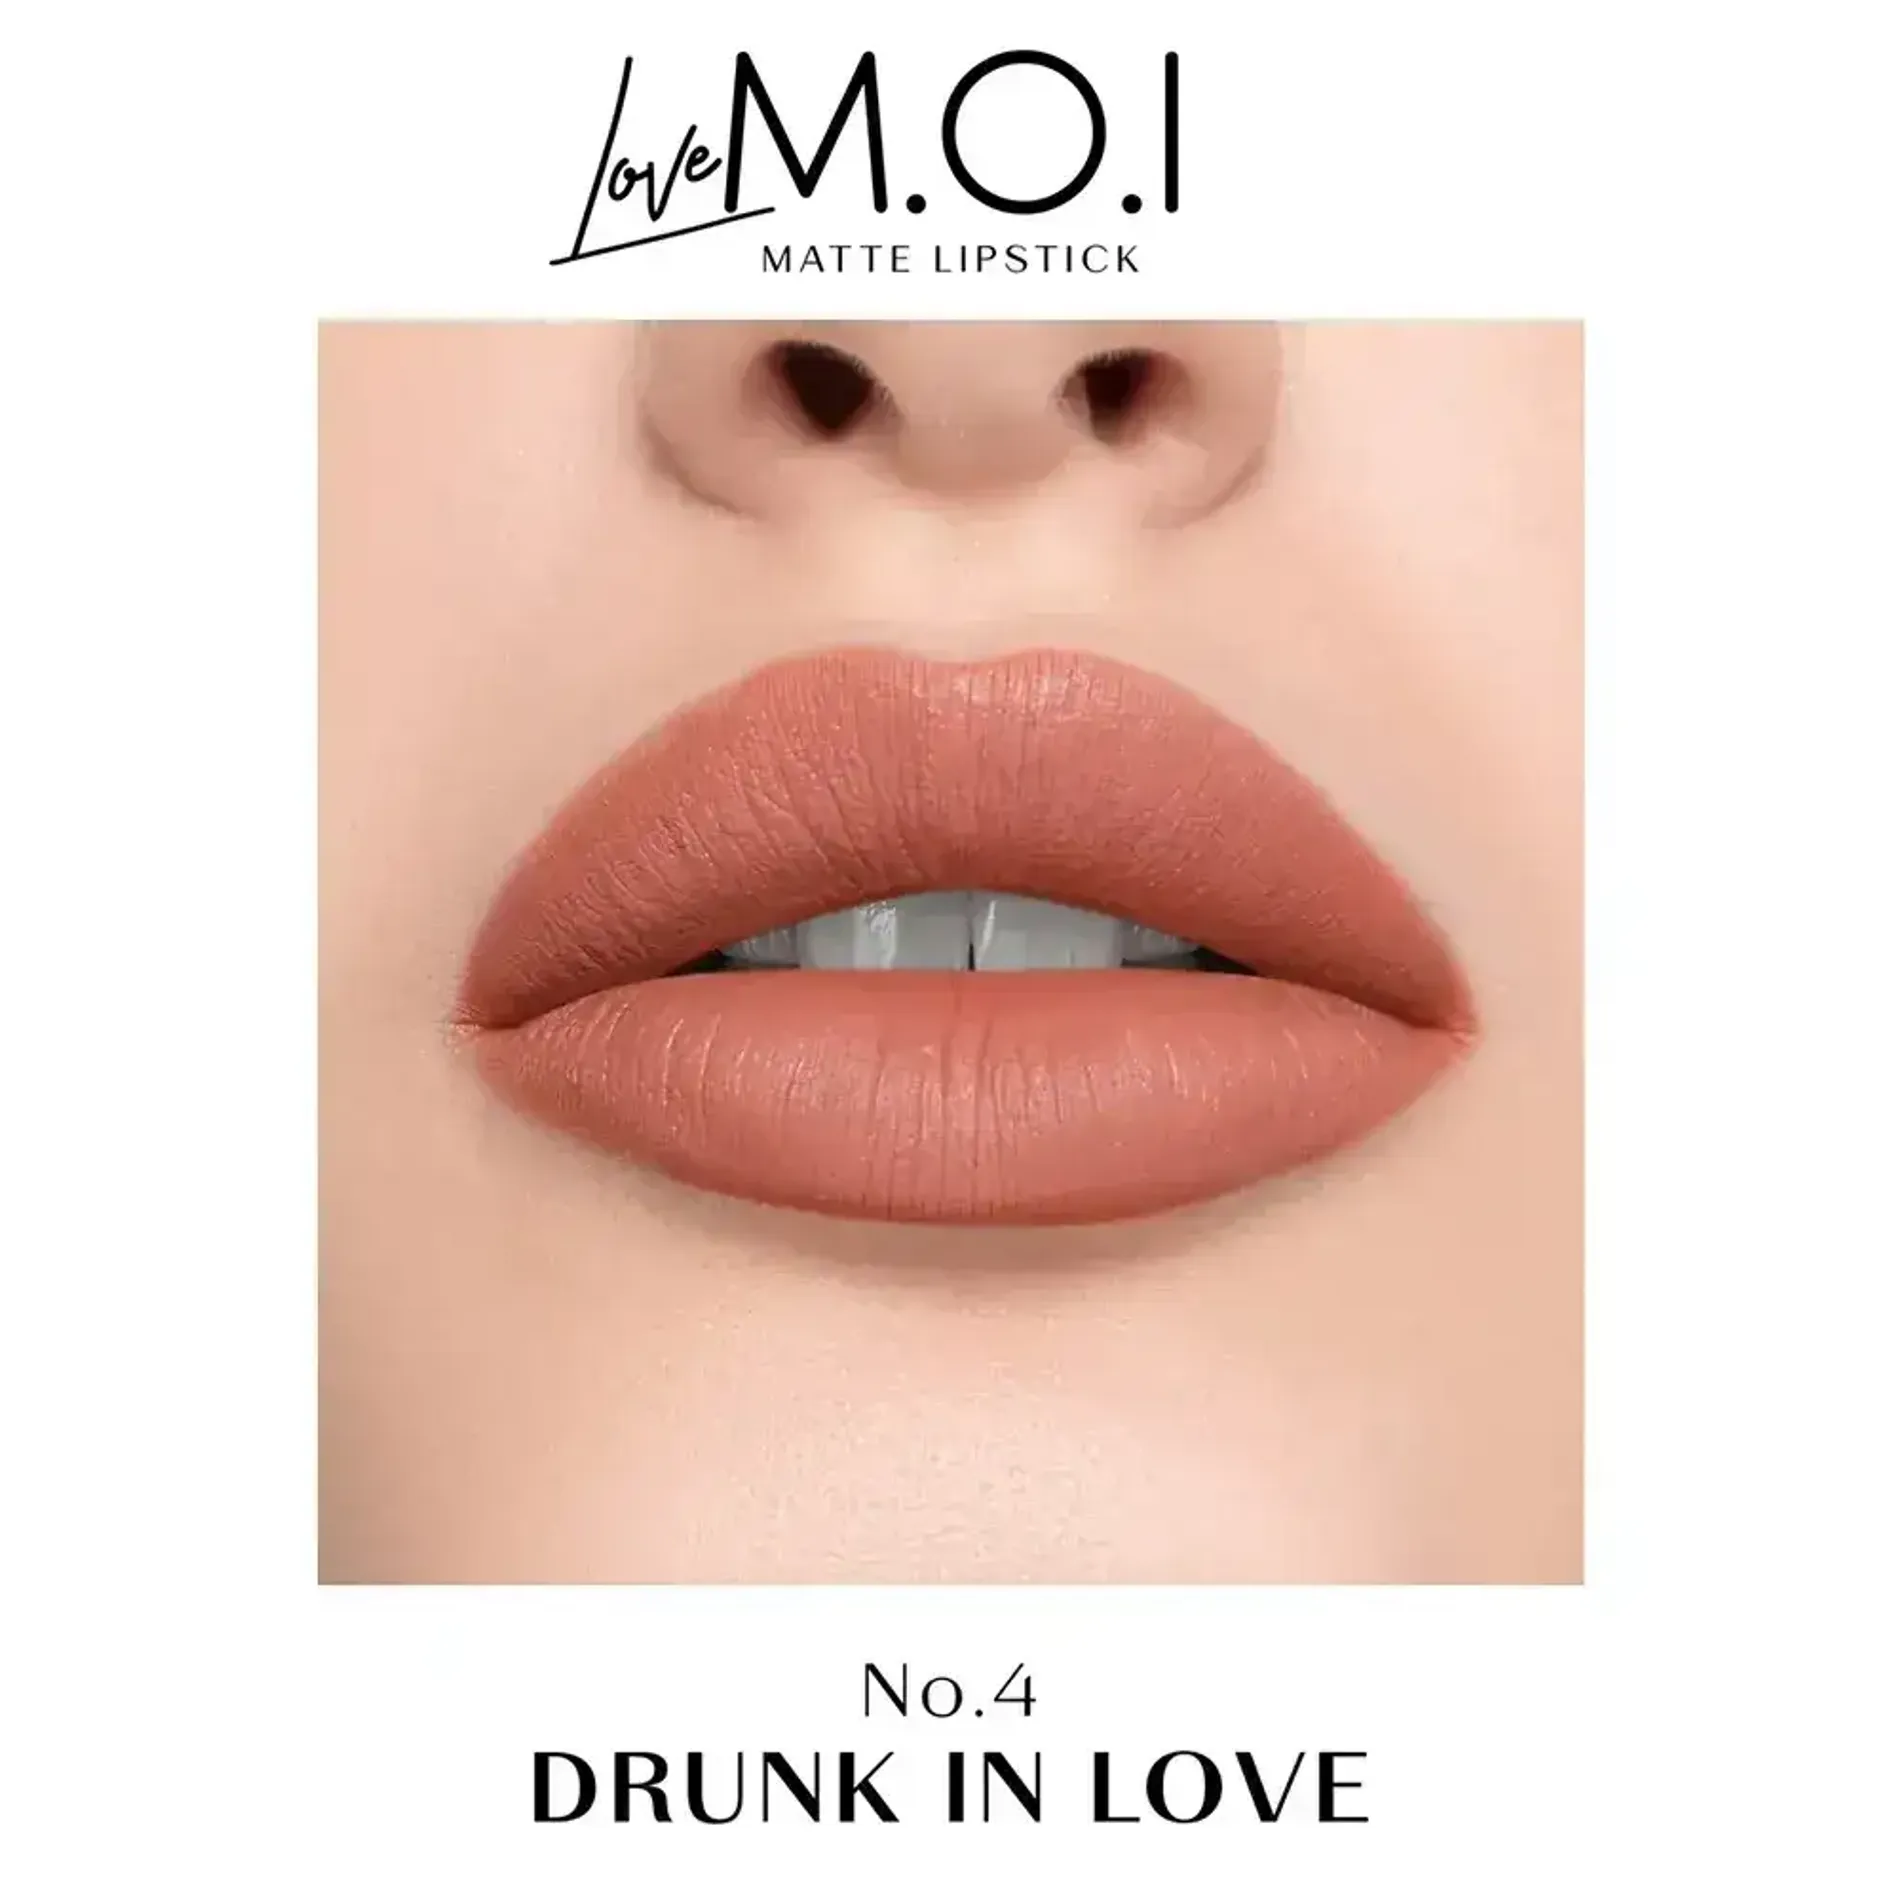 son-thoi-sap-love-m-o-i-matte-liquid-lipstick-3-5g-17